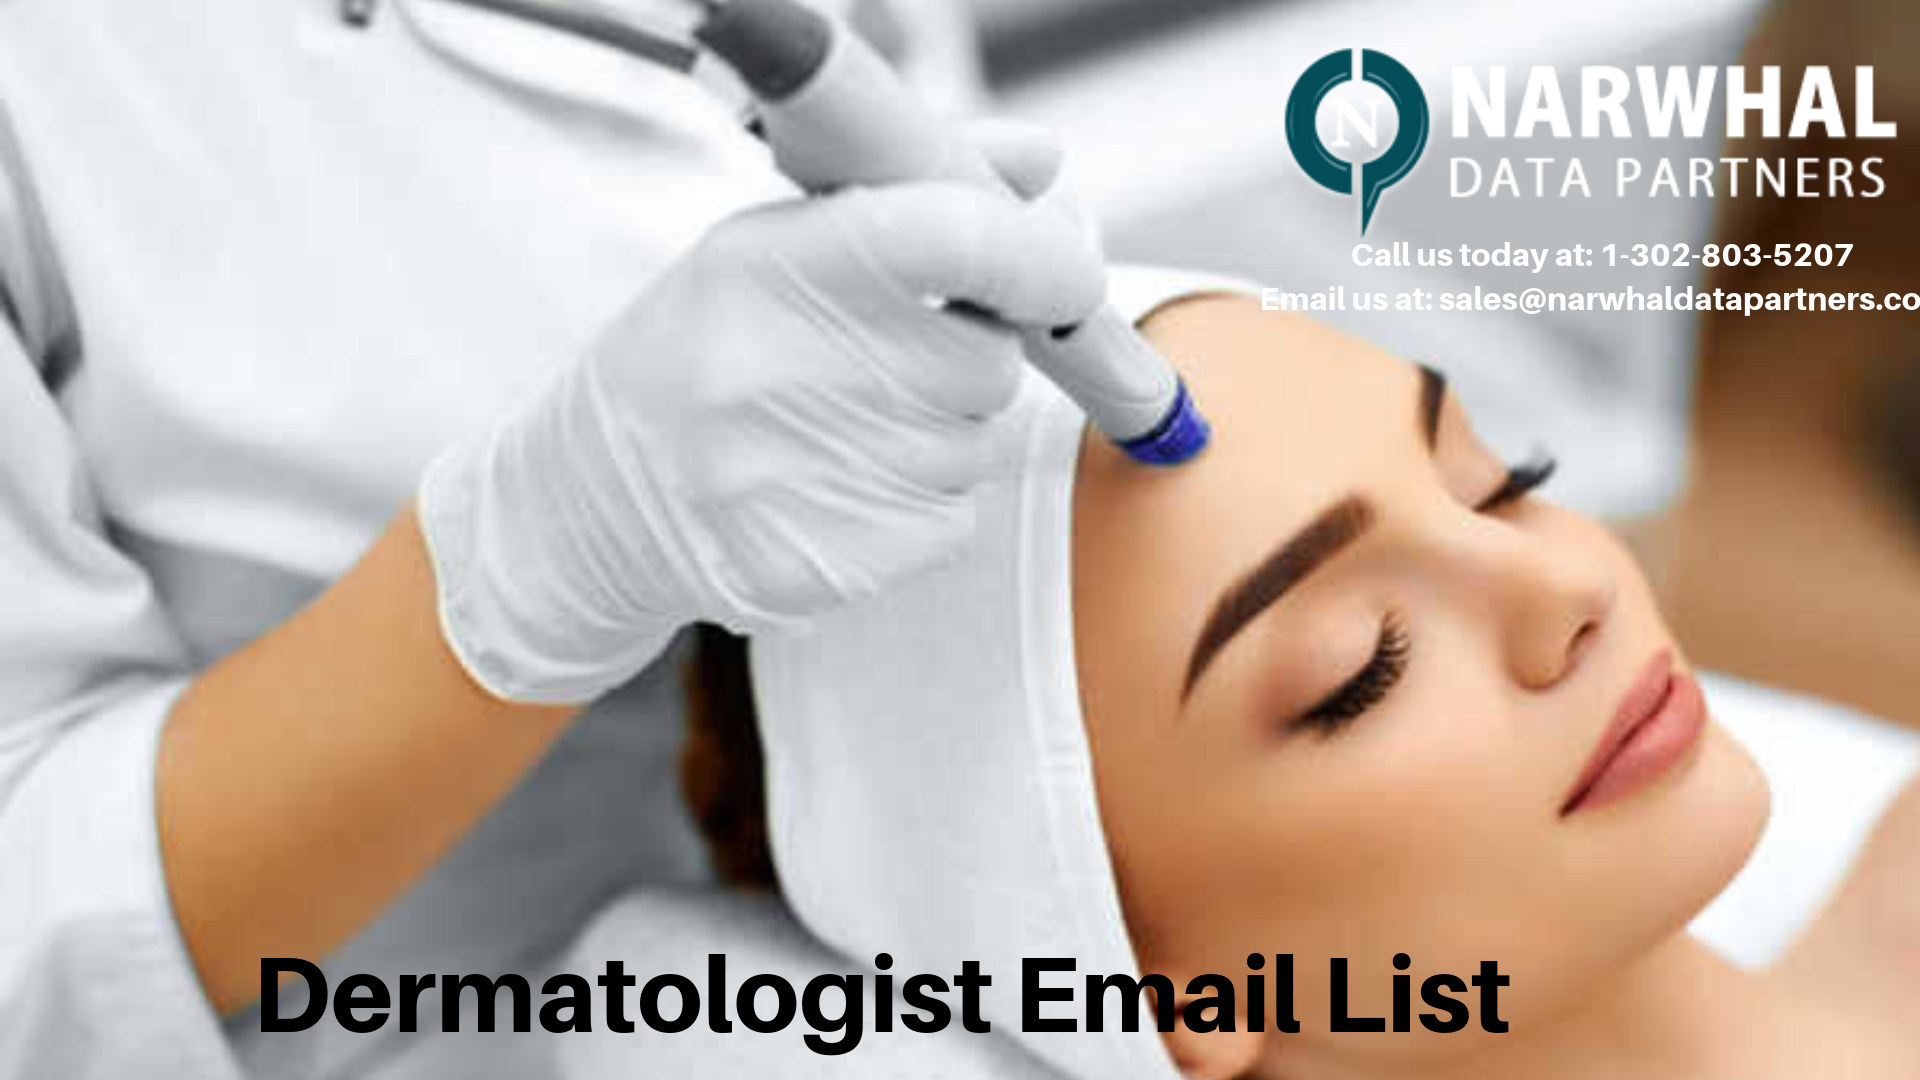 http://narwhaldatapartners.com/dermatologist-email-list.html